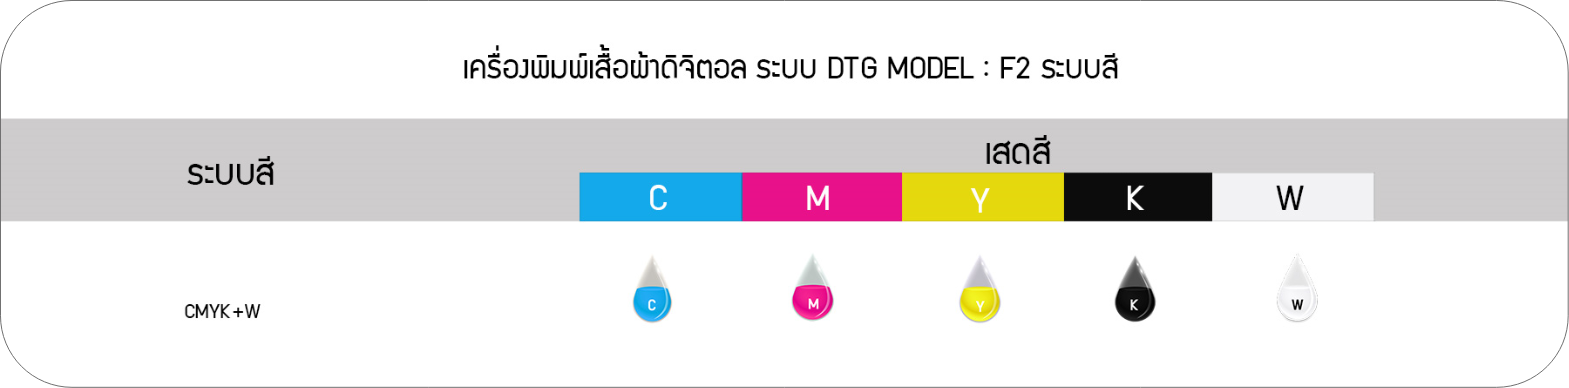 ระบบสี ของเครื่องพิมพ์เสื้อผ้าดิจิตอล ระบบ DTG MODEL : F2